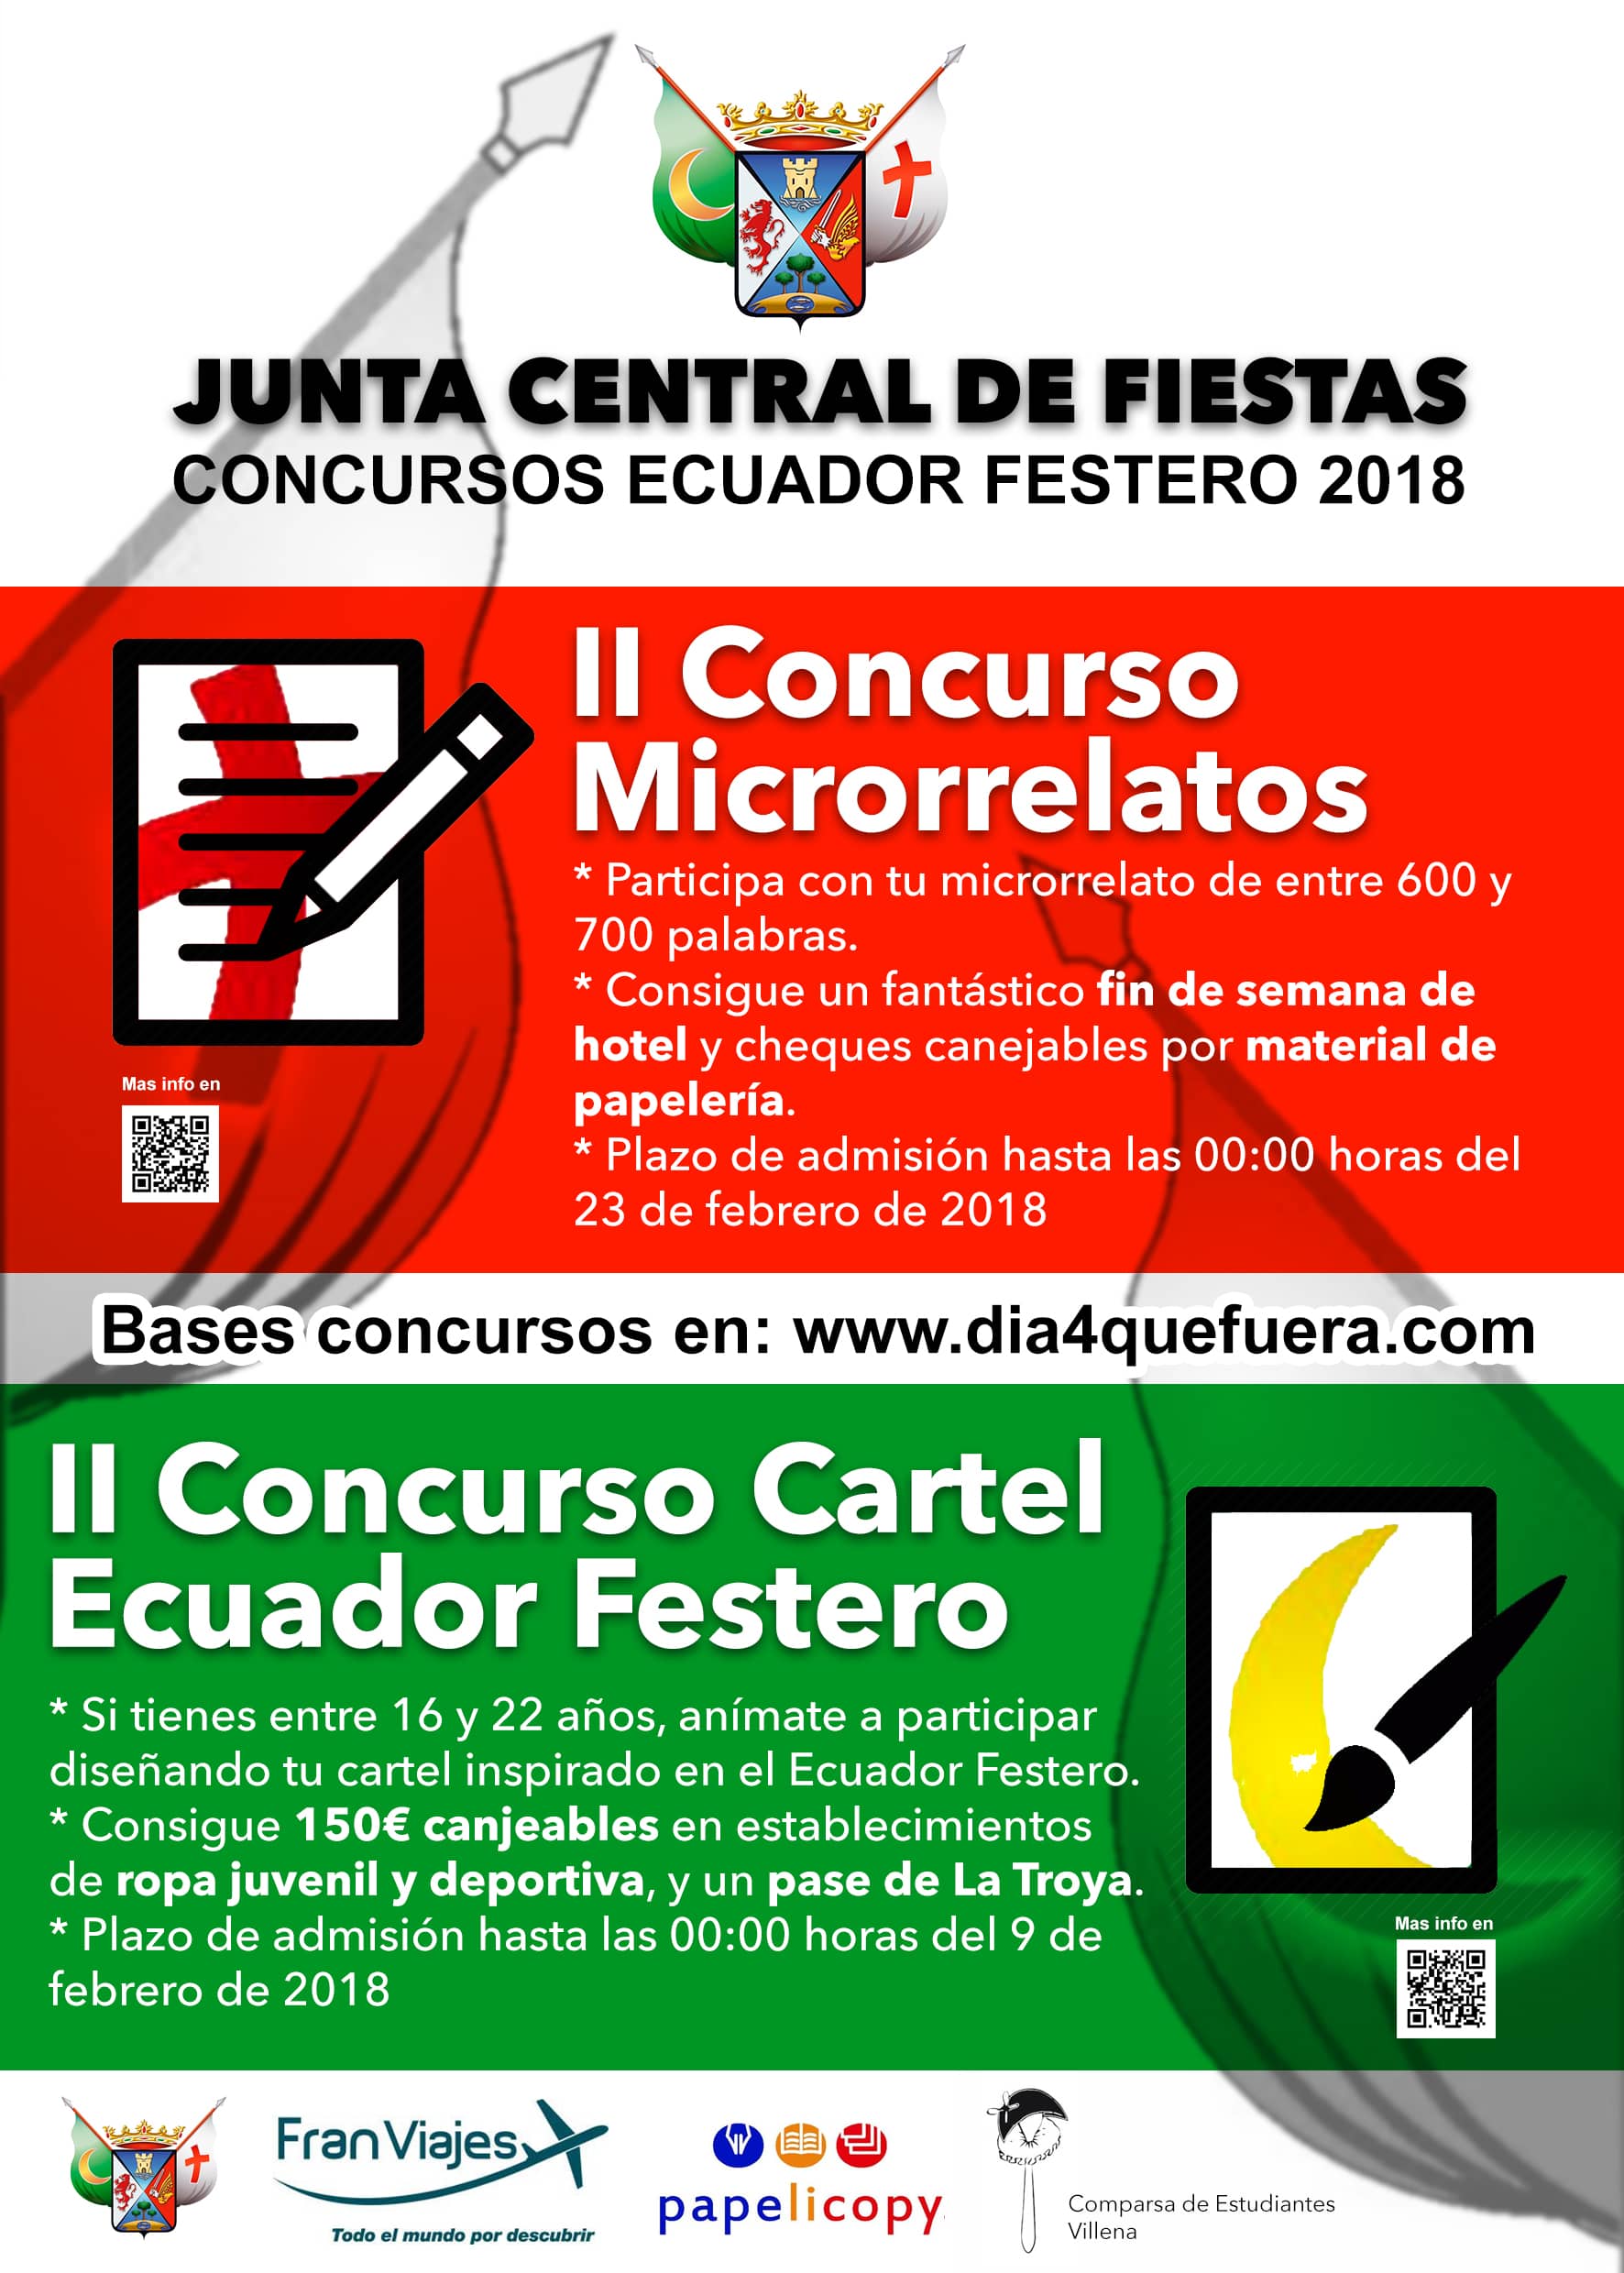 La Junta Central de Fiestas convoca la segunda edición de los concursos de Microrrelatos y Cartel del Ecuador Festero 2018